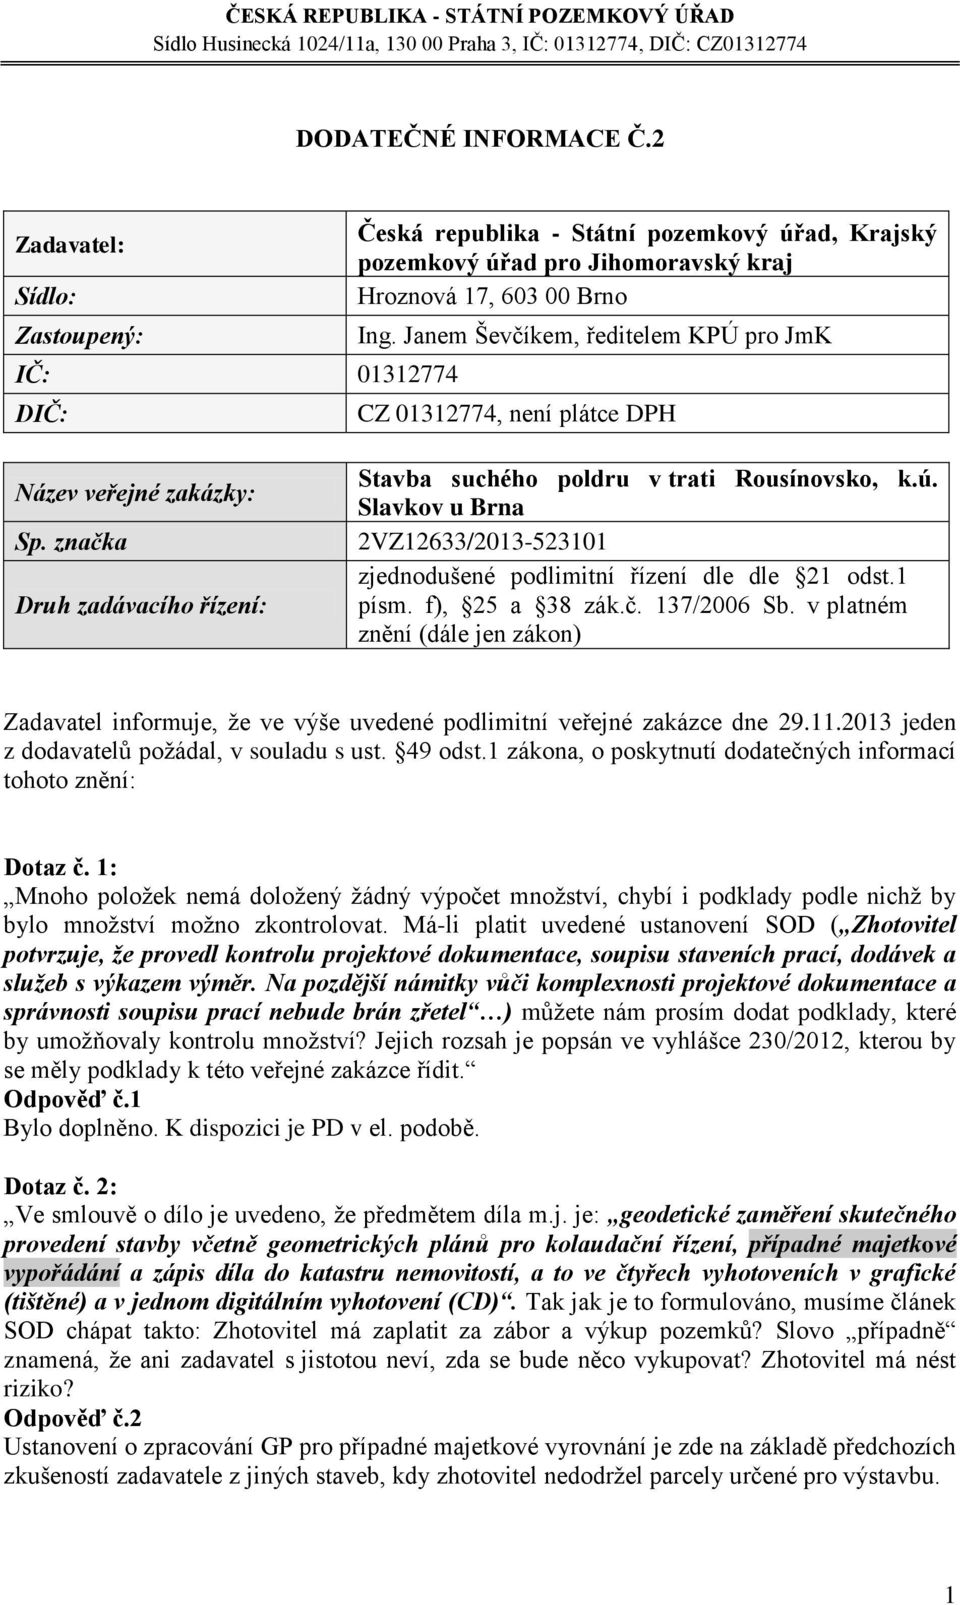 Slavkov u Brna 2VZ12633/2013-523101 zjednodušené podlimitní řízení dle dle 21 odst.1 písm. f), 25 a 38 zák.č. 137/2006 Sb.